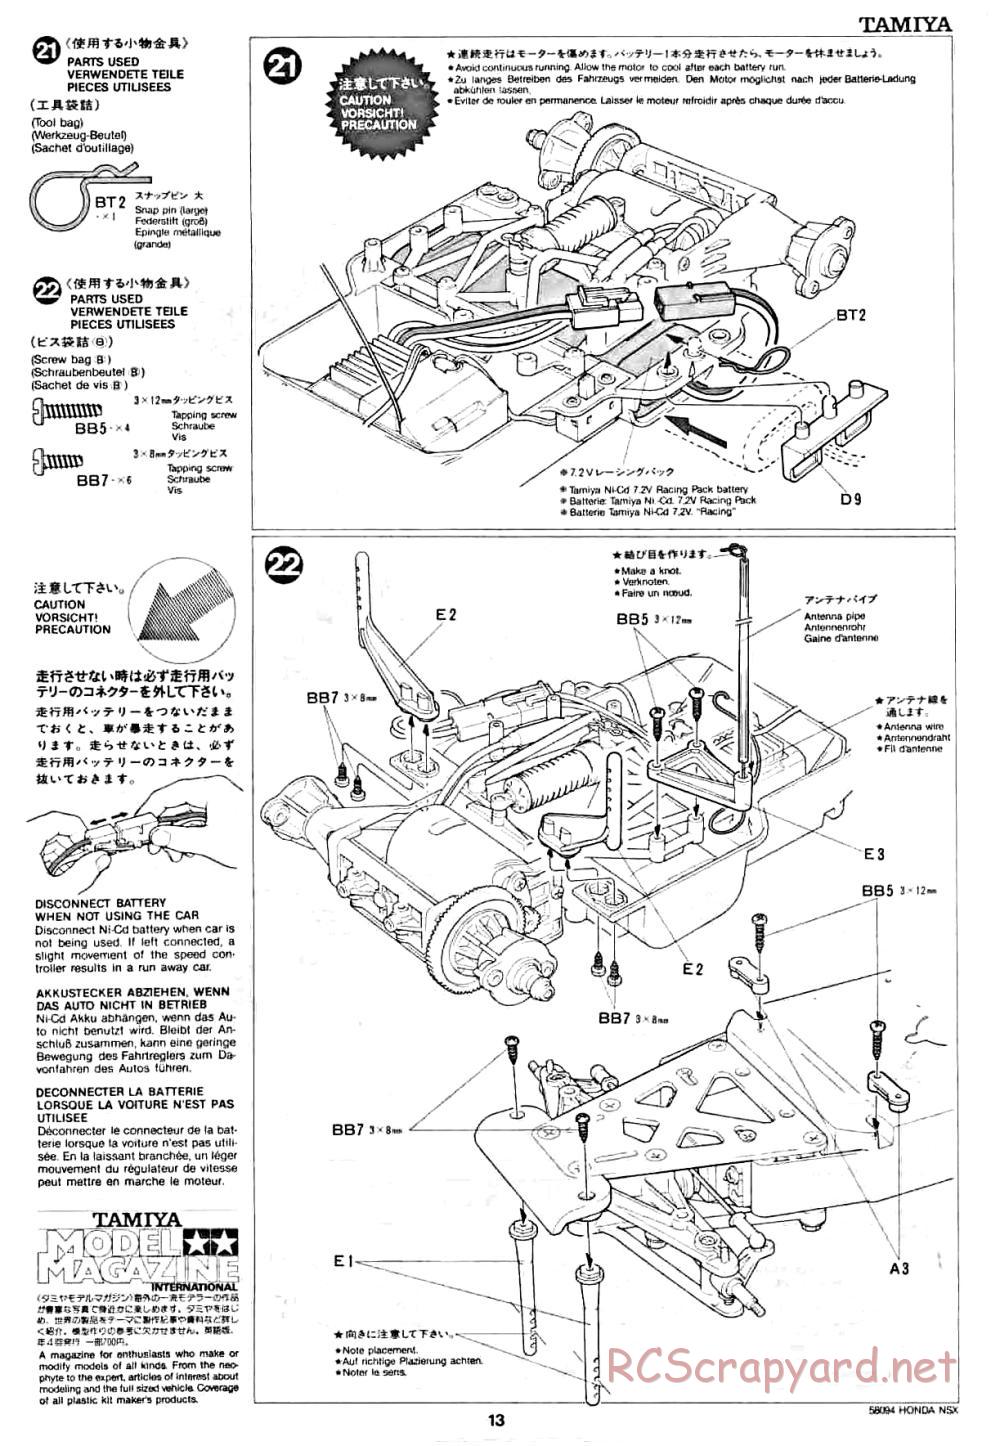 Tamiya - Honda NSX - 58094 - Manual - Page 13